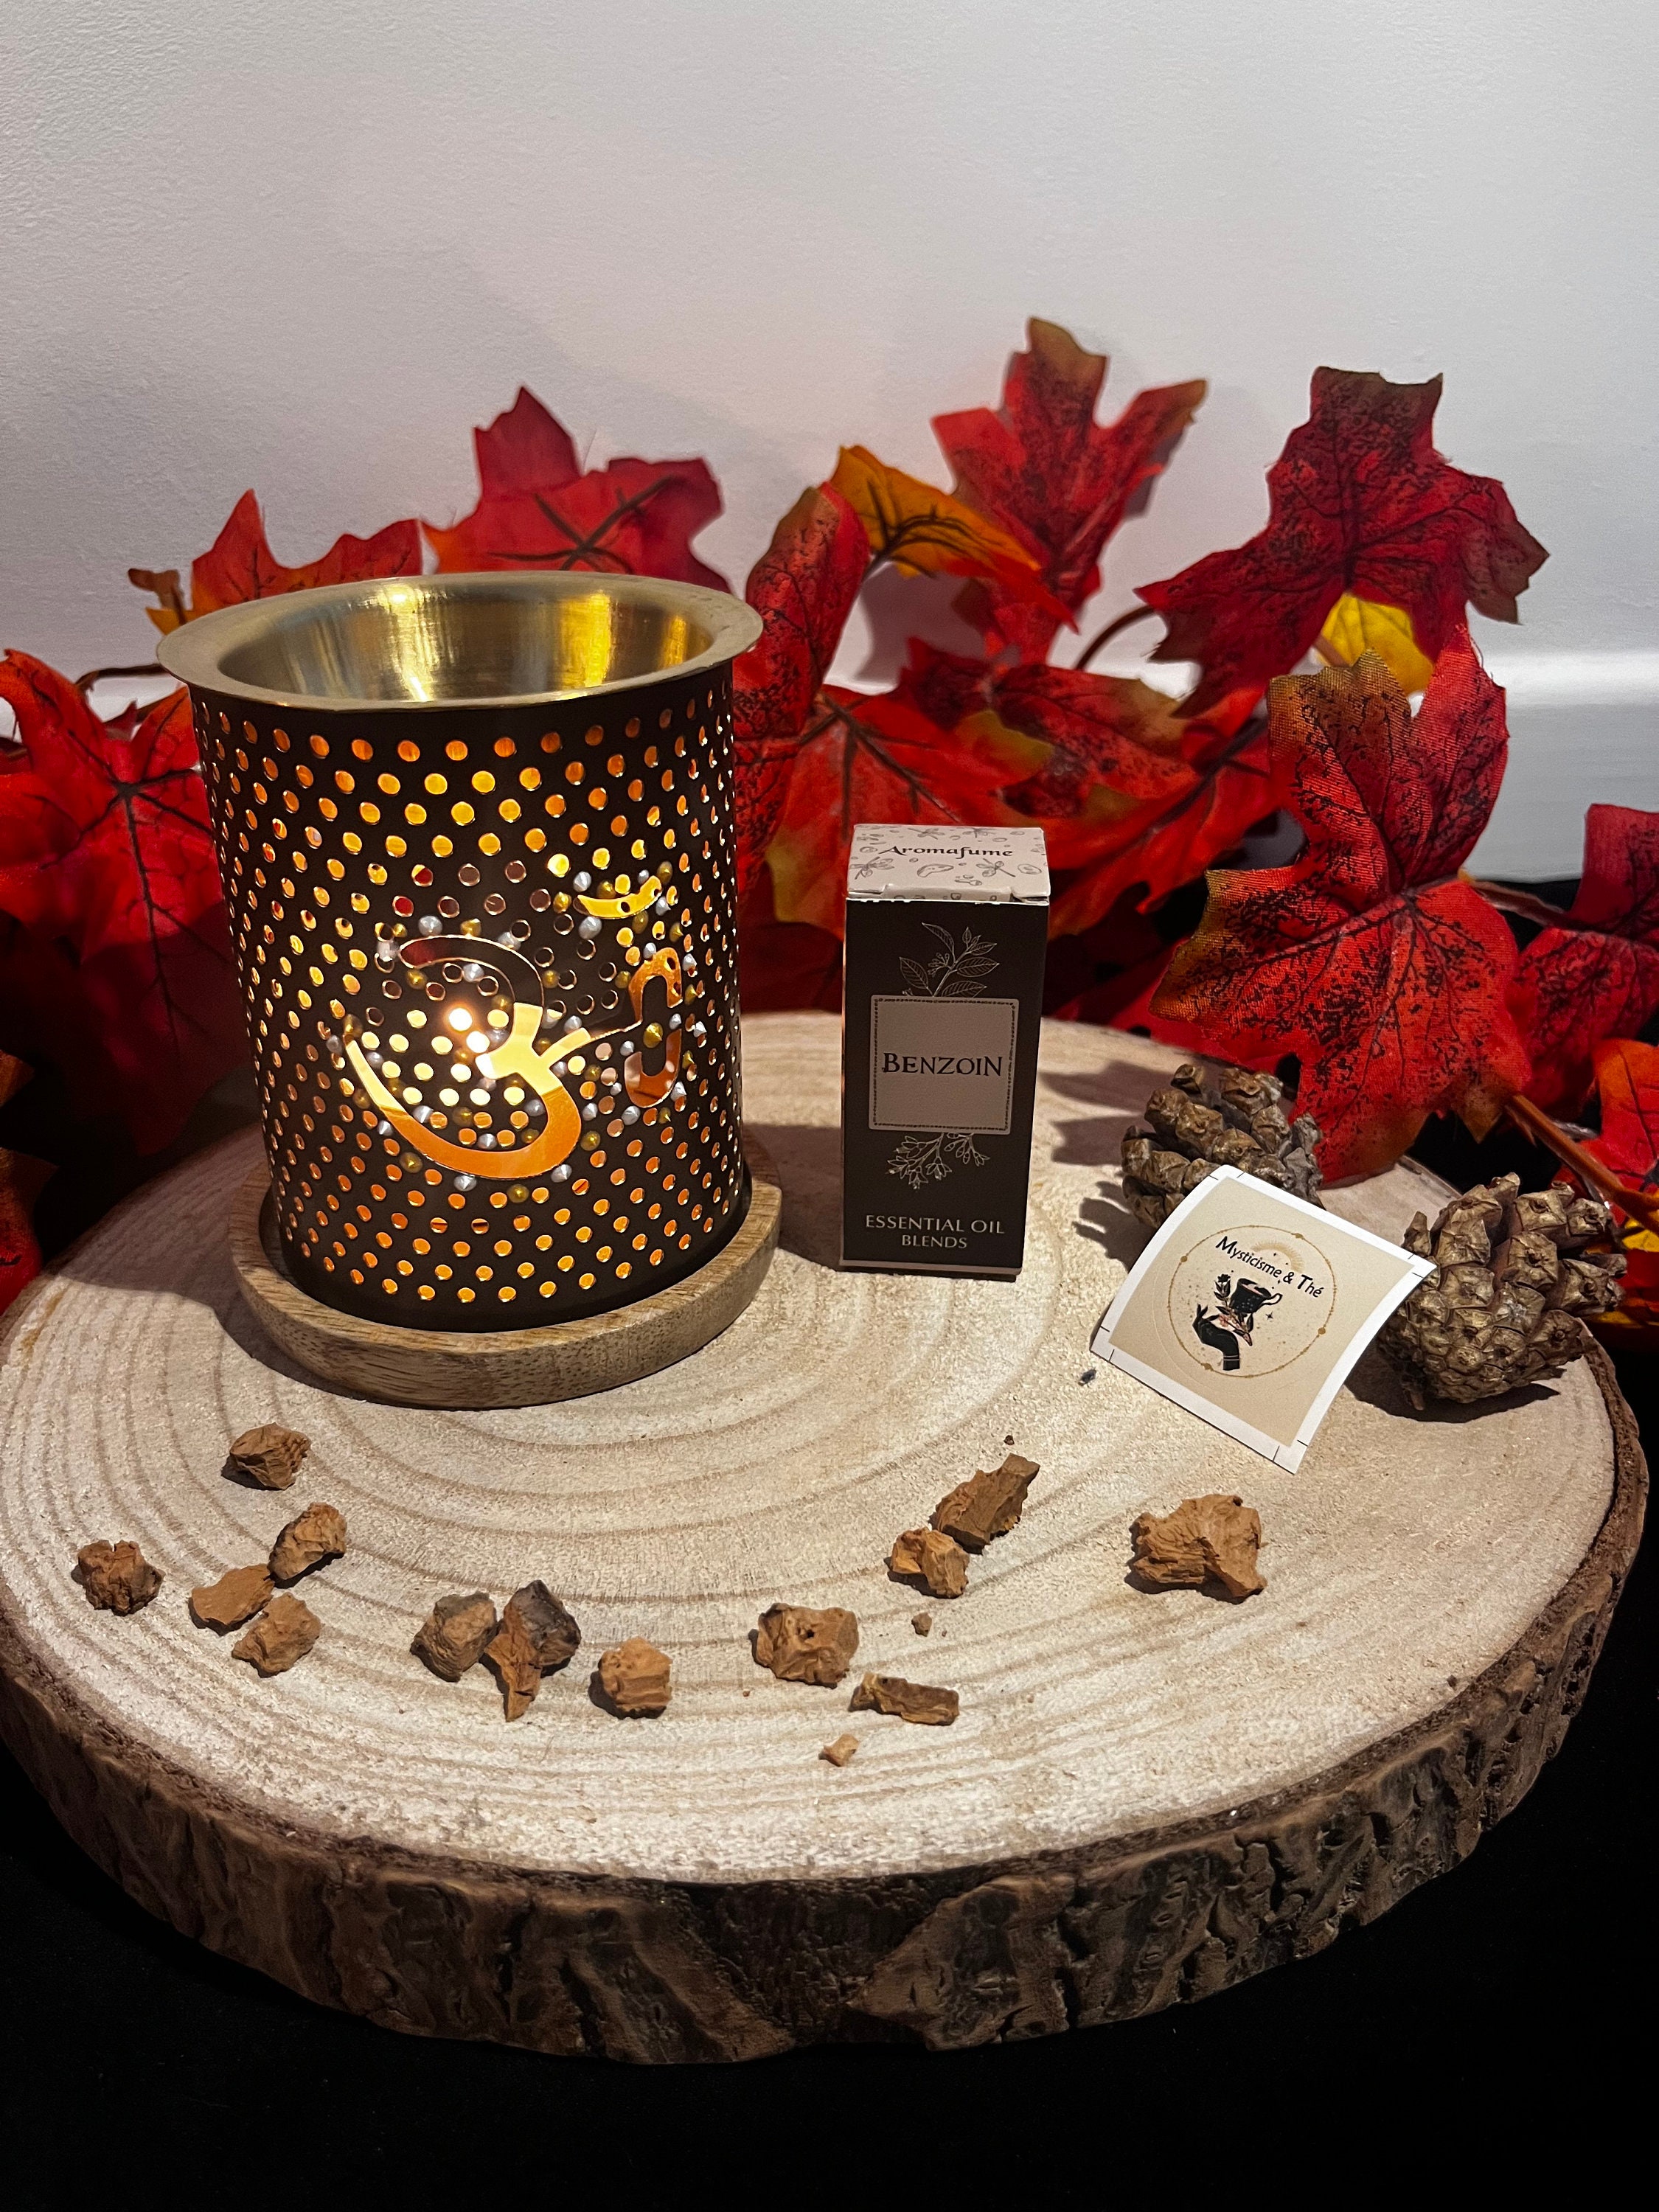 Lampe diffuseur de parfum électrique pour galets cire en céramique bouddha  noir artisanal